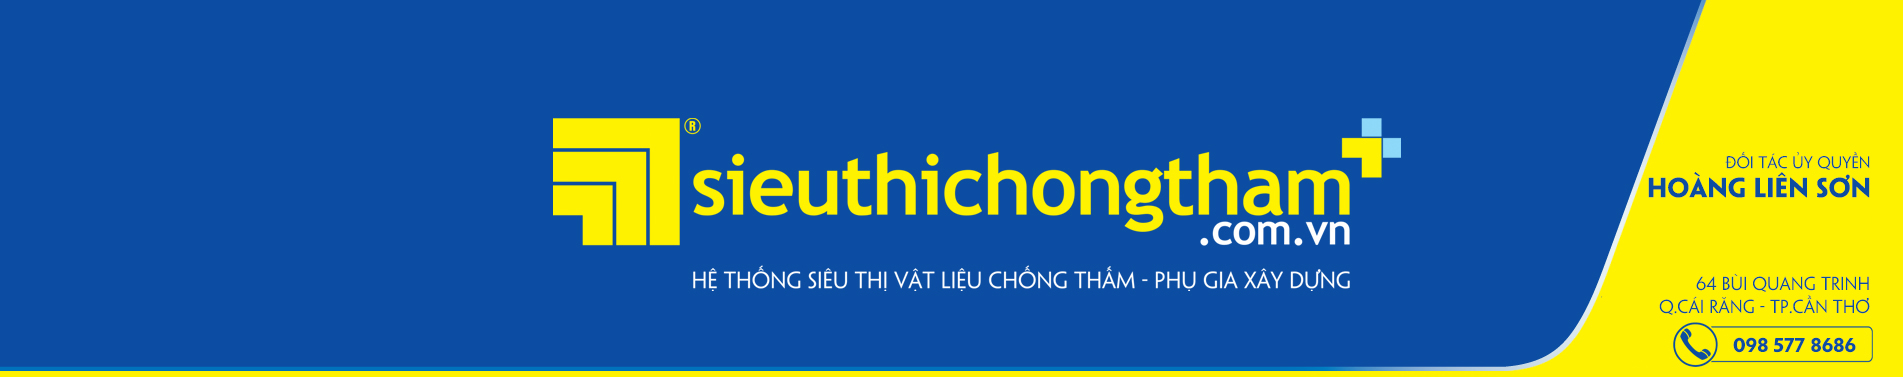 Hoang Lien Son Banner